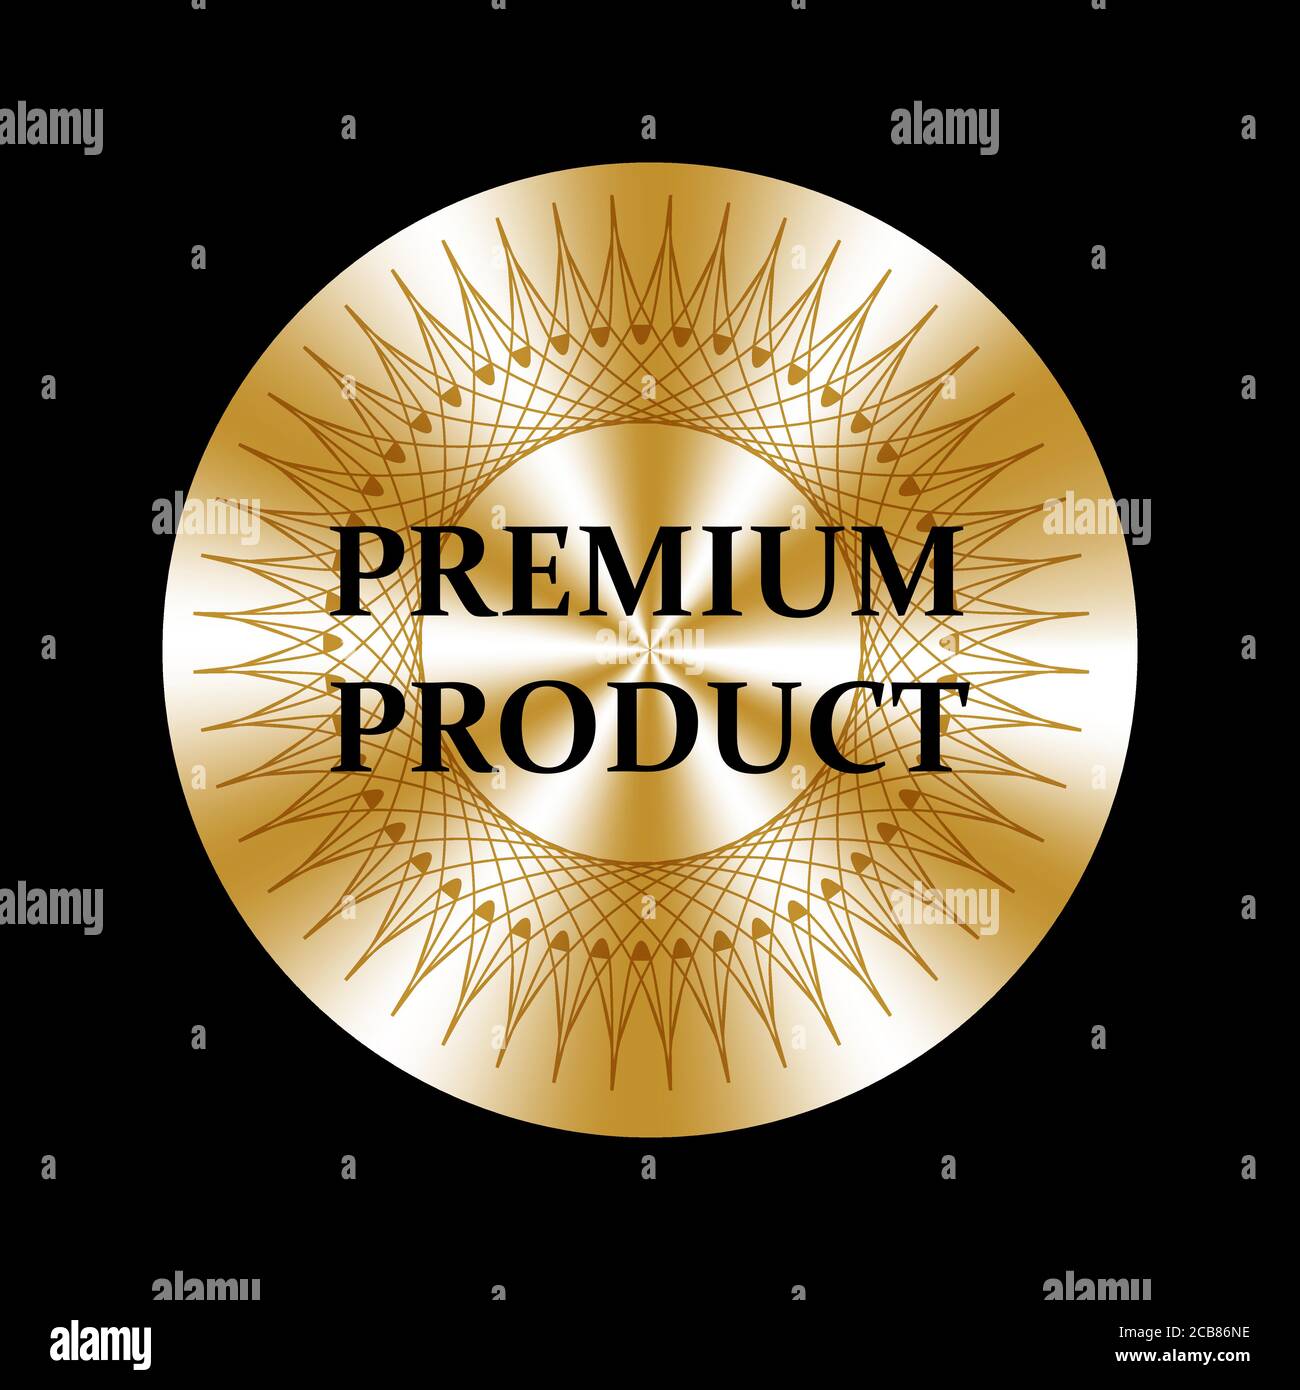 Adesivo rotondo dorato prodotto di alta qualità. Medaglia, premio, segno, icona, logo, tag, timbro adesivo vettoriale dorato per la progettazione di etichette Illustrazione Vettoriale